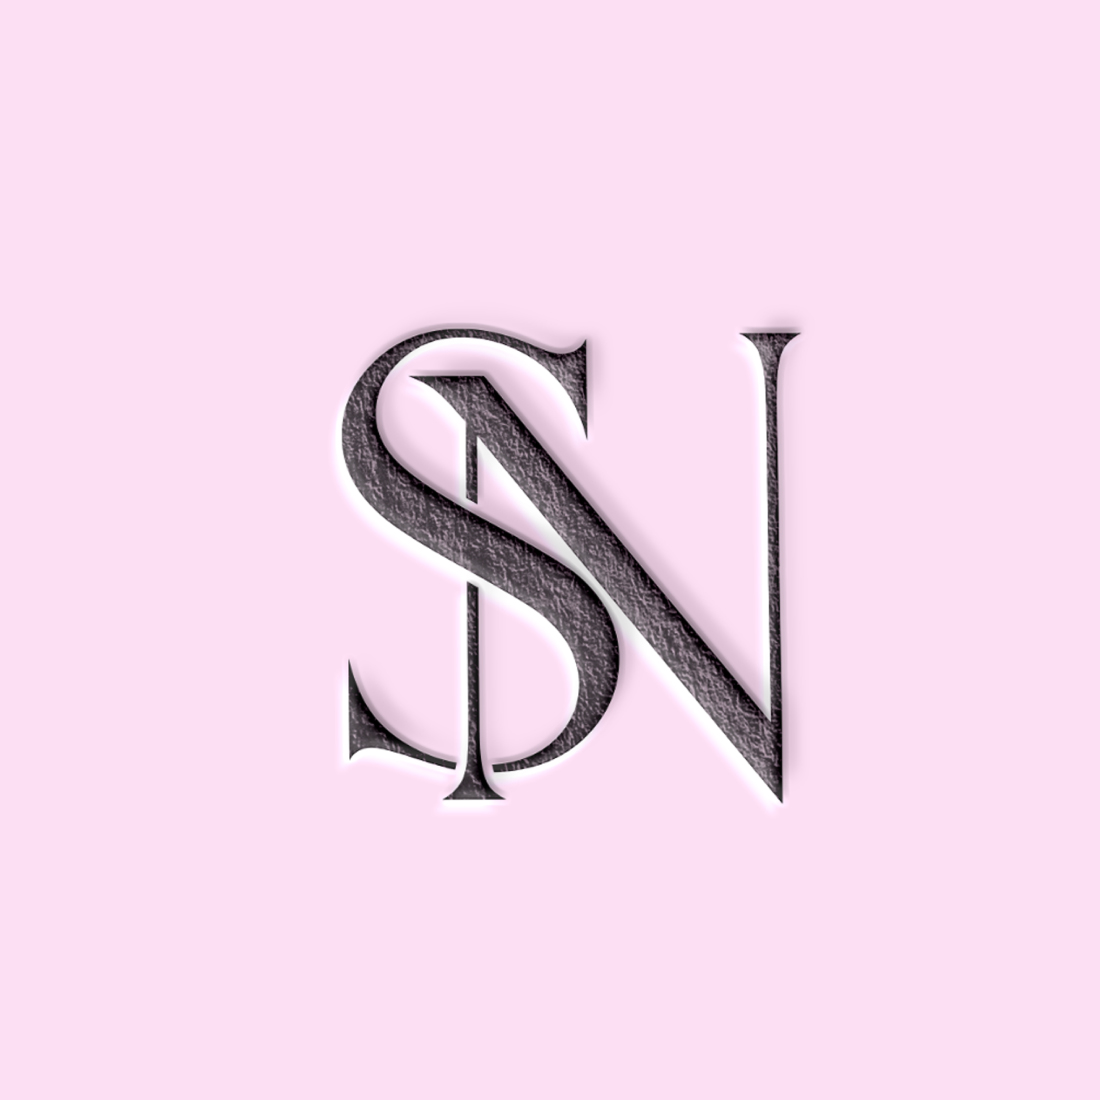 SN logo design preview image.